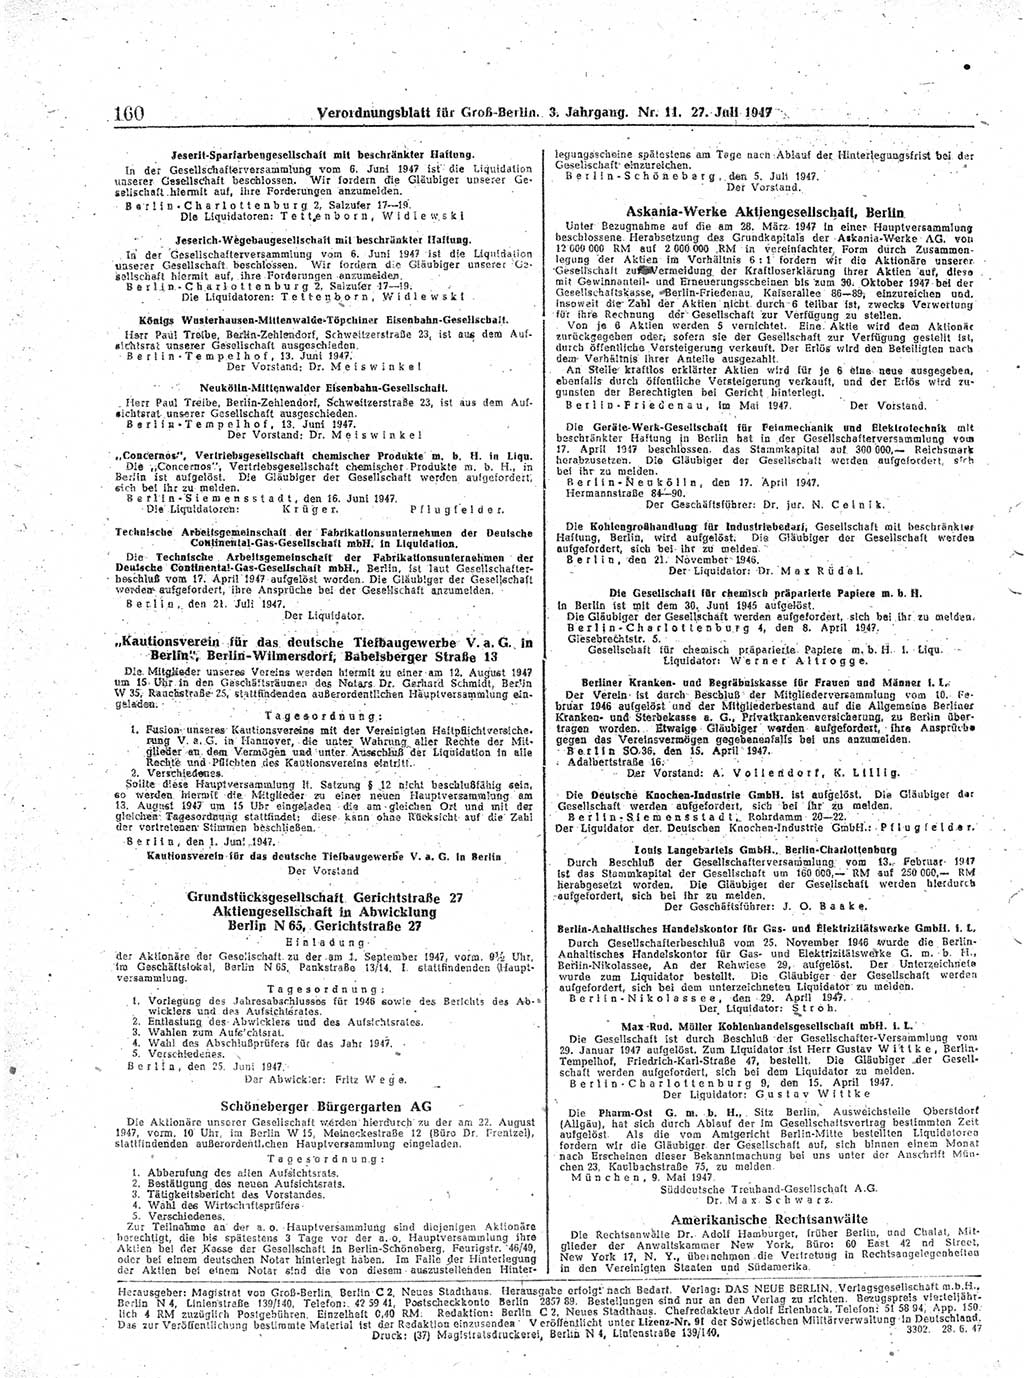 Verordnungsblatt (VOBl.) für Groß-Berlin 1947, Seite 160 (VOBl. Bln. 1947, S. 160)